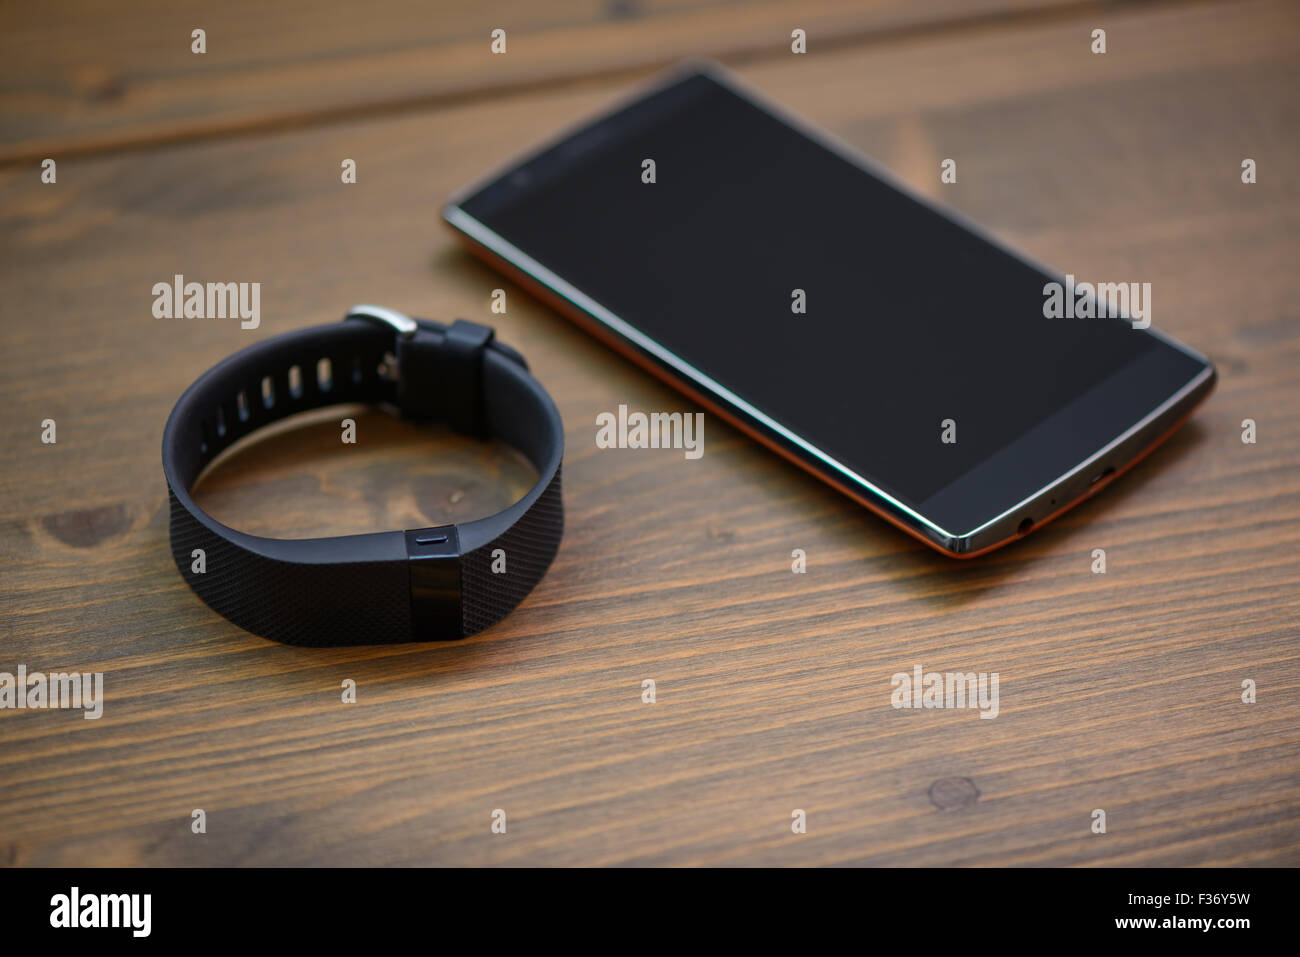 Dispositivo indossabile, wirst watch tipo Sport Tracker e smart phone su una tavola di legno Foto Stock